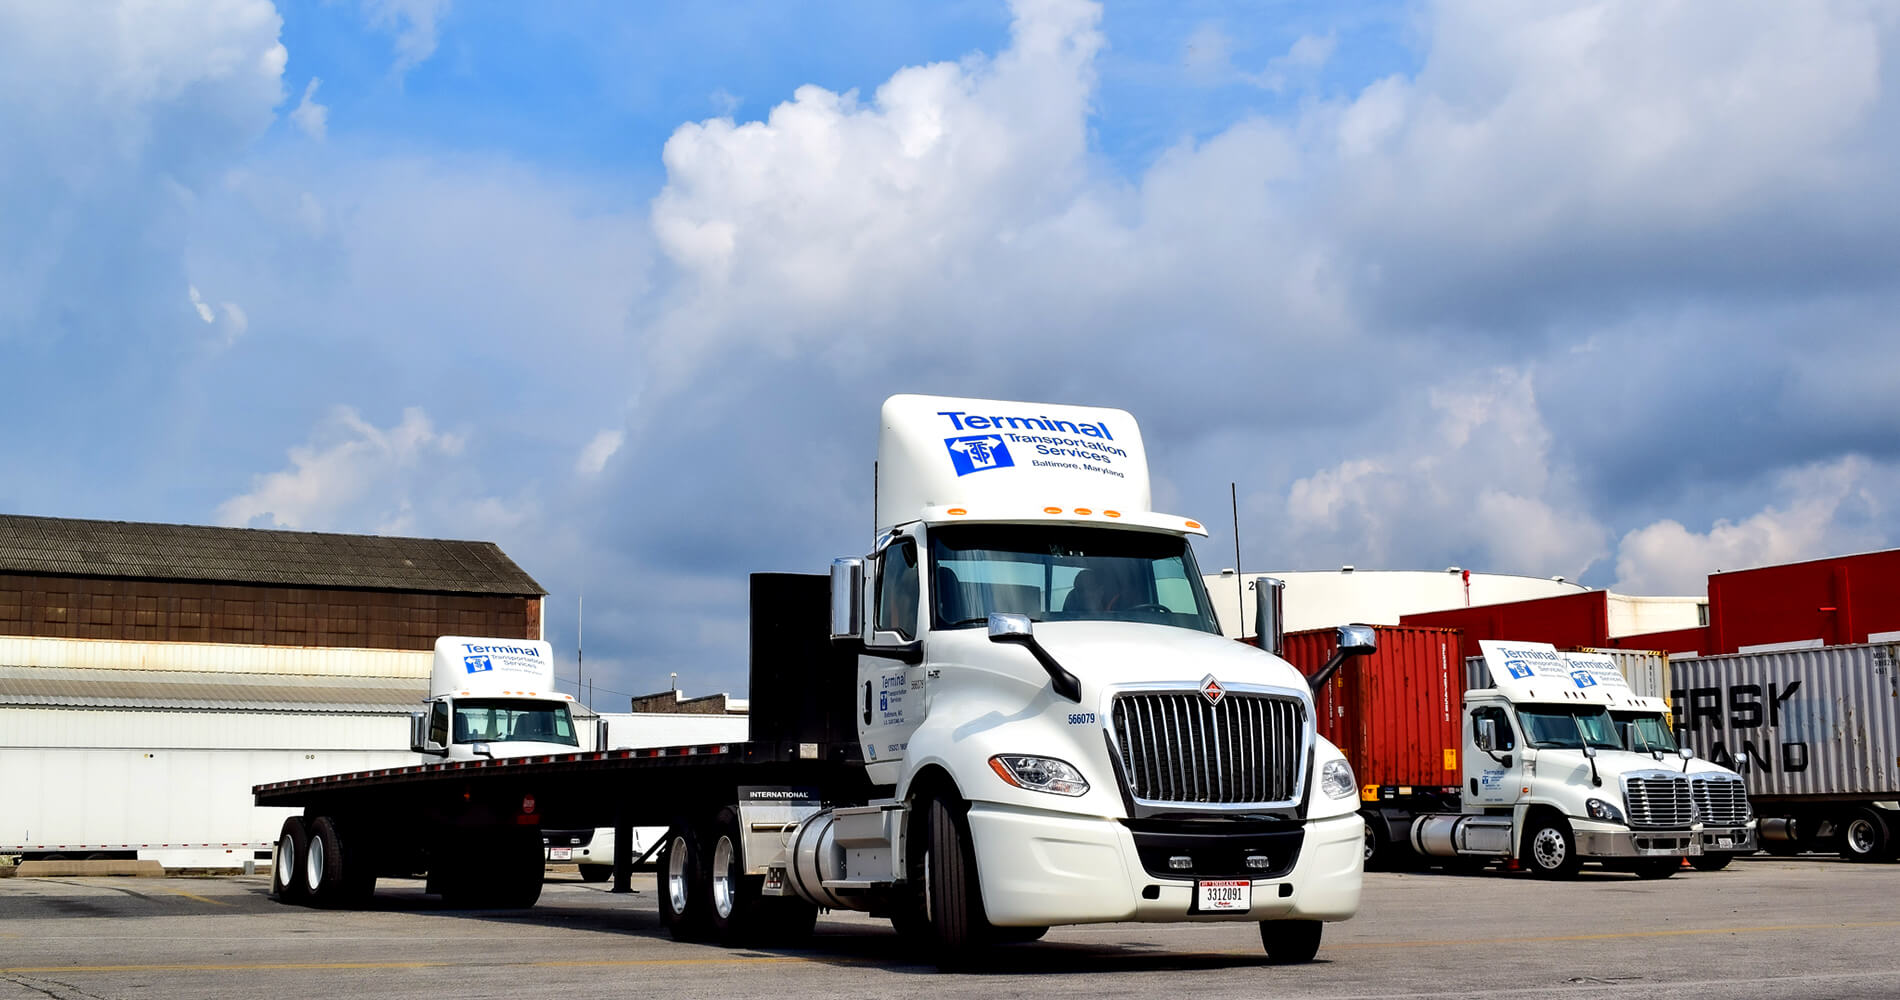 trucks parked at terminal transportation baltimore